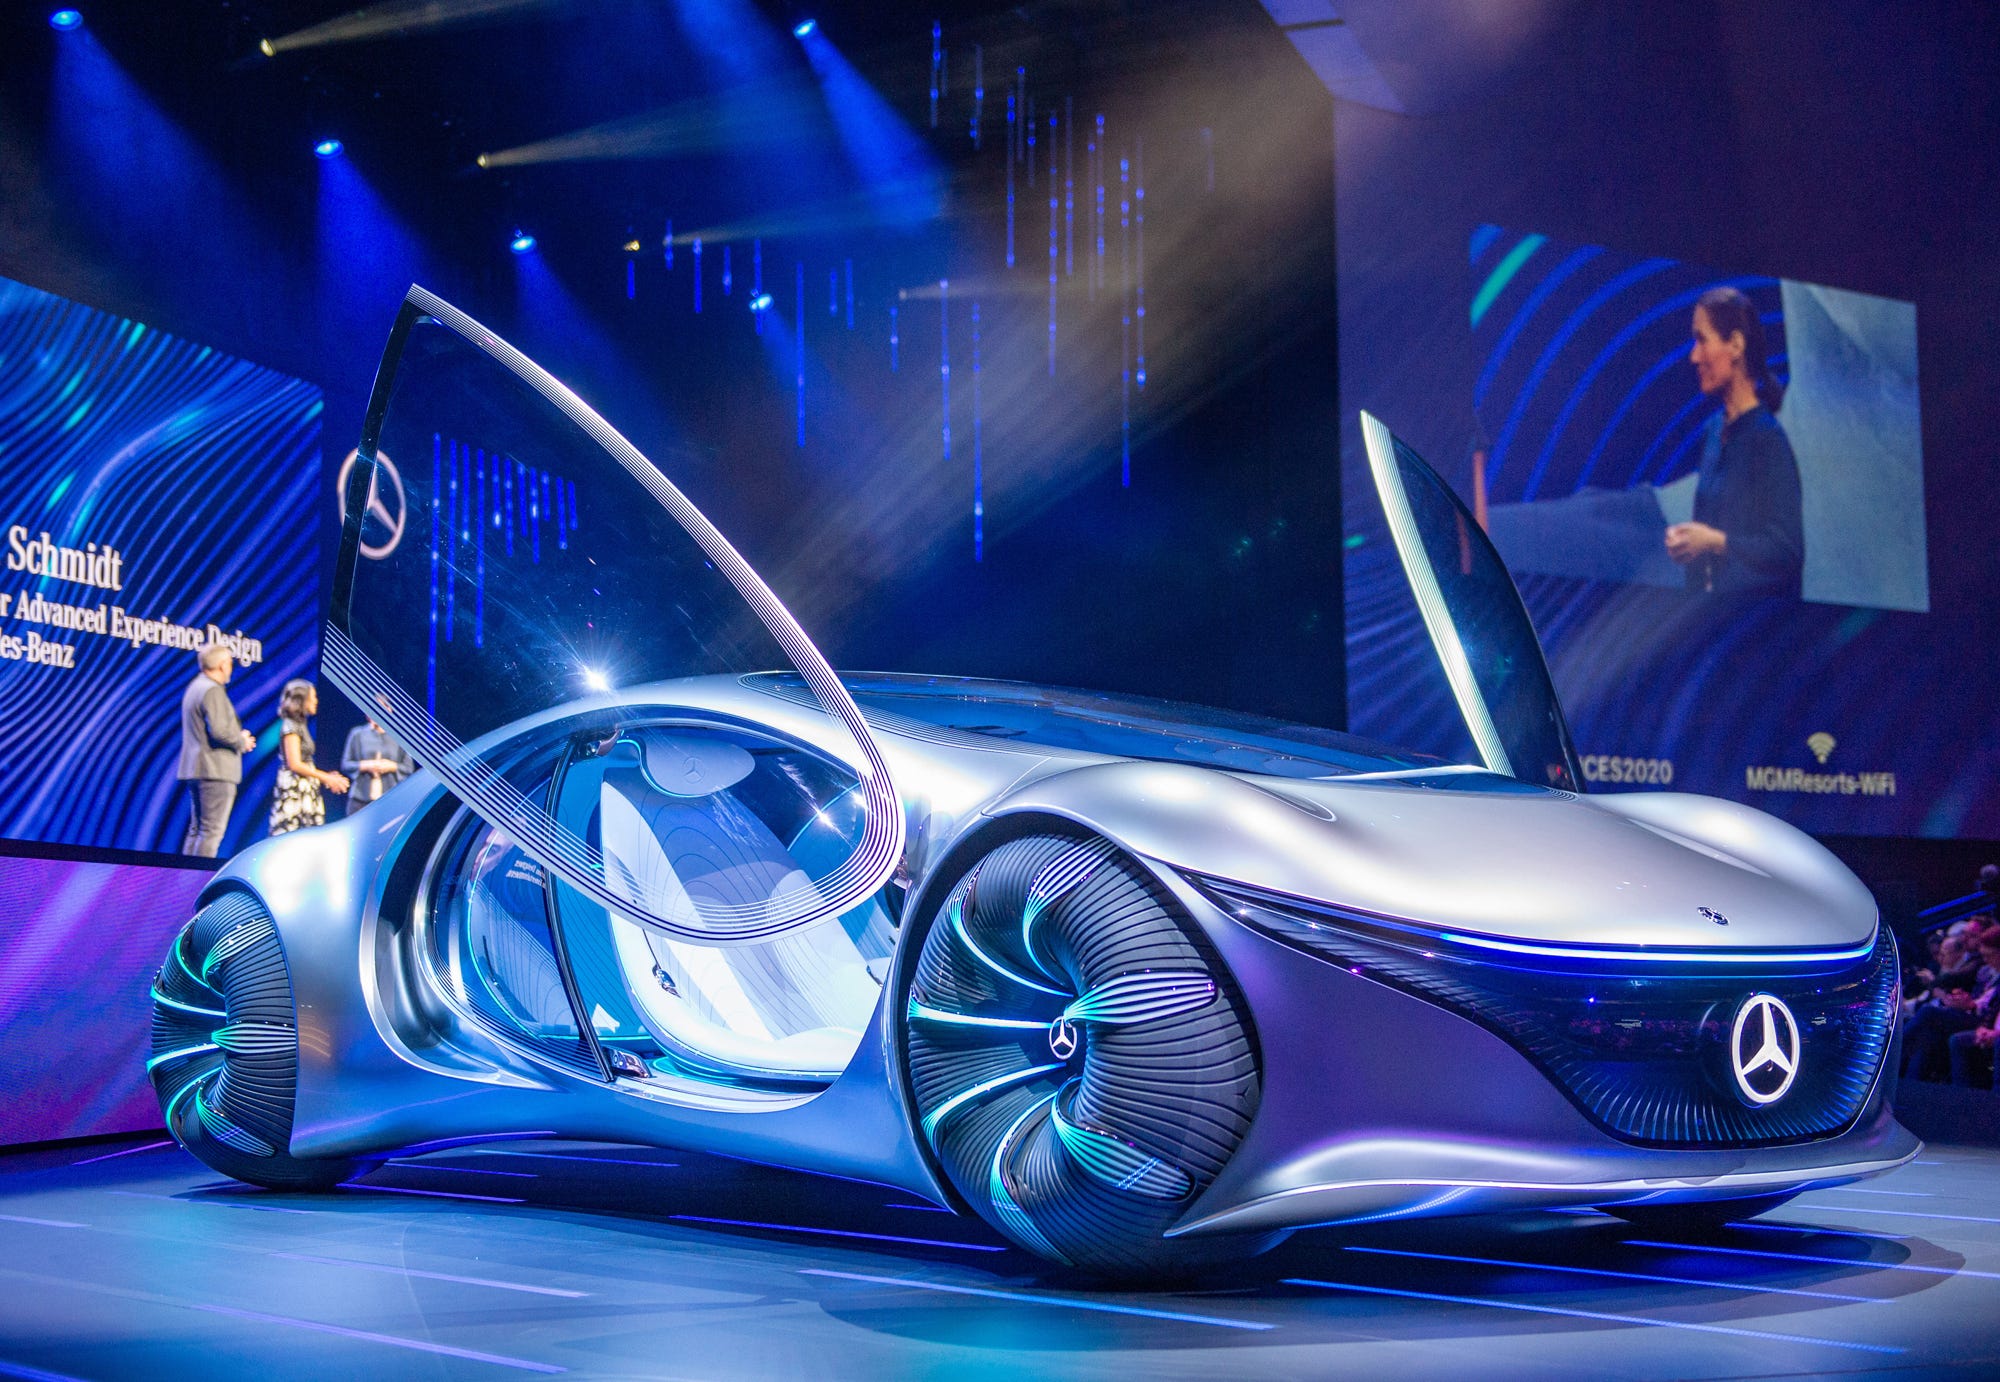 PandoraProjekt  Mercedes stellt faszinierendes AvatarAuto vor  kroneat